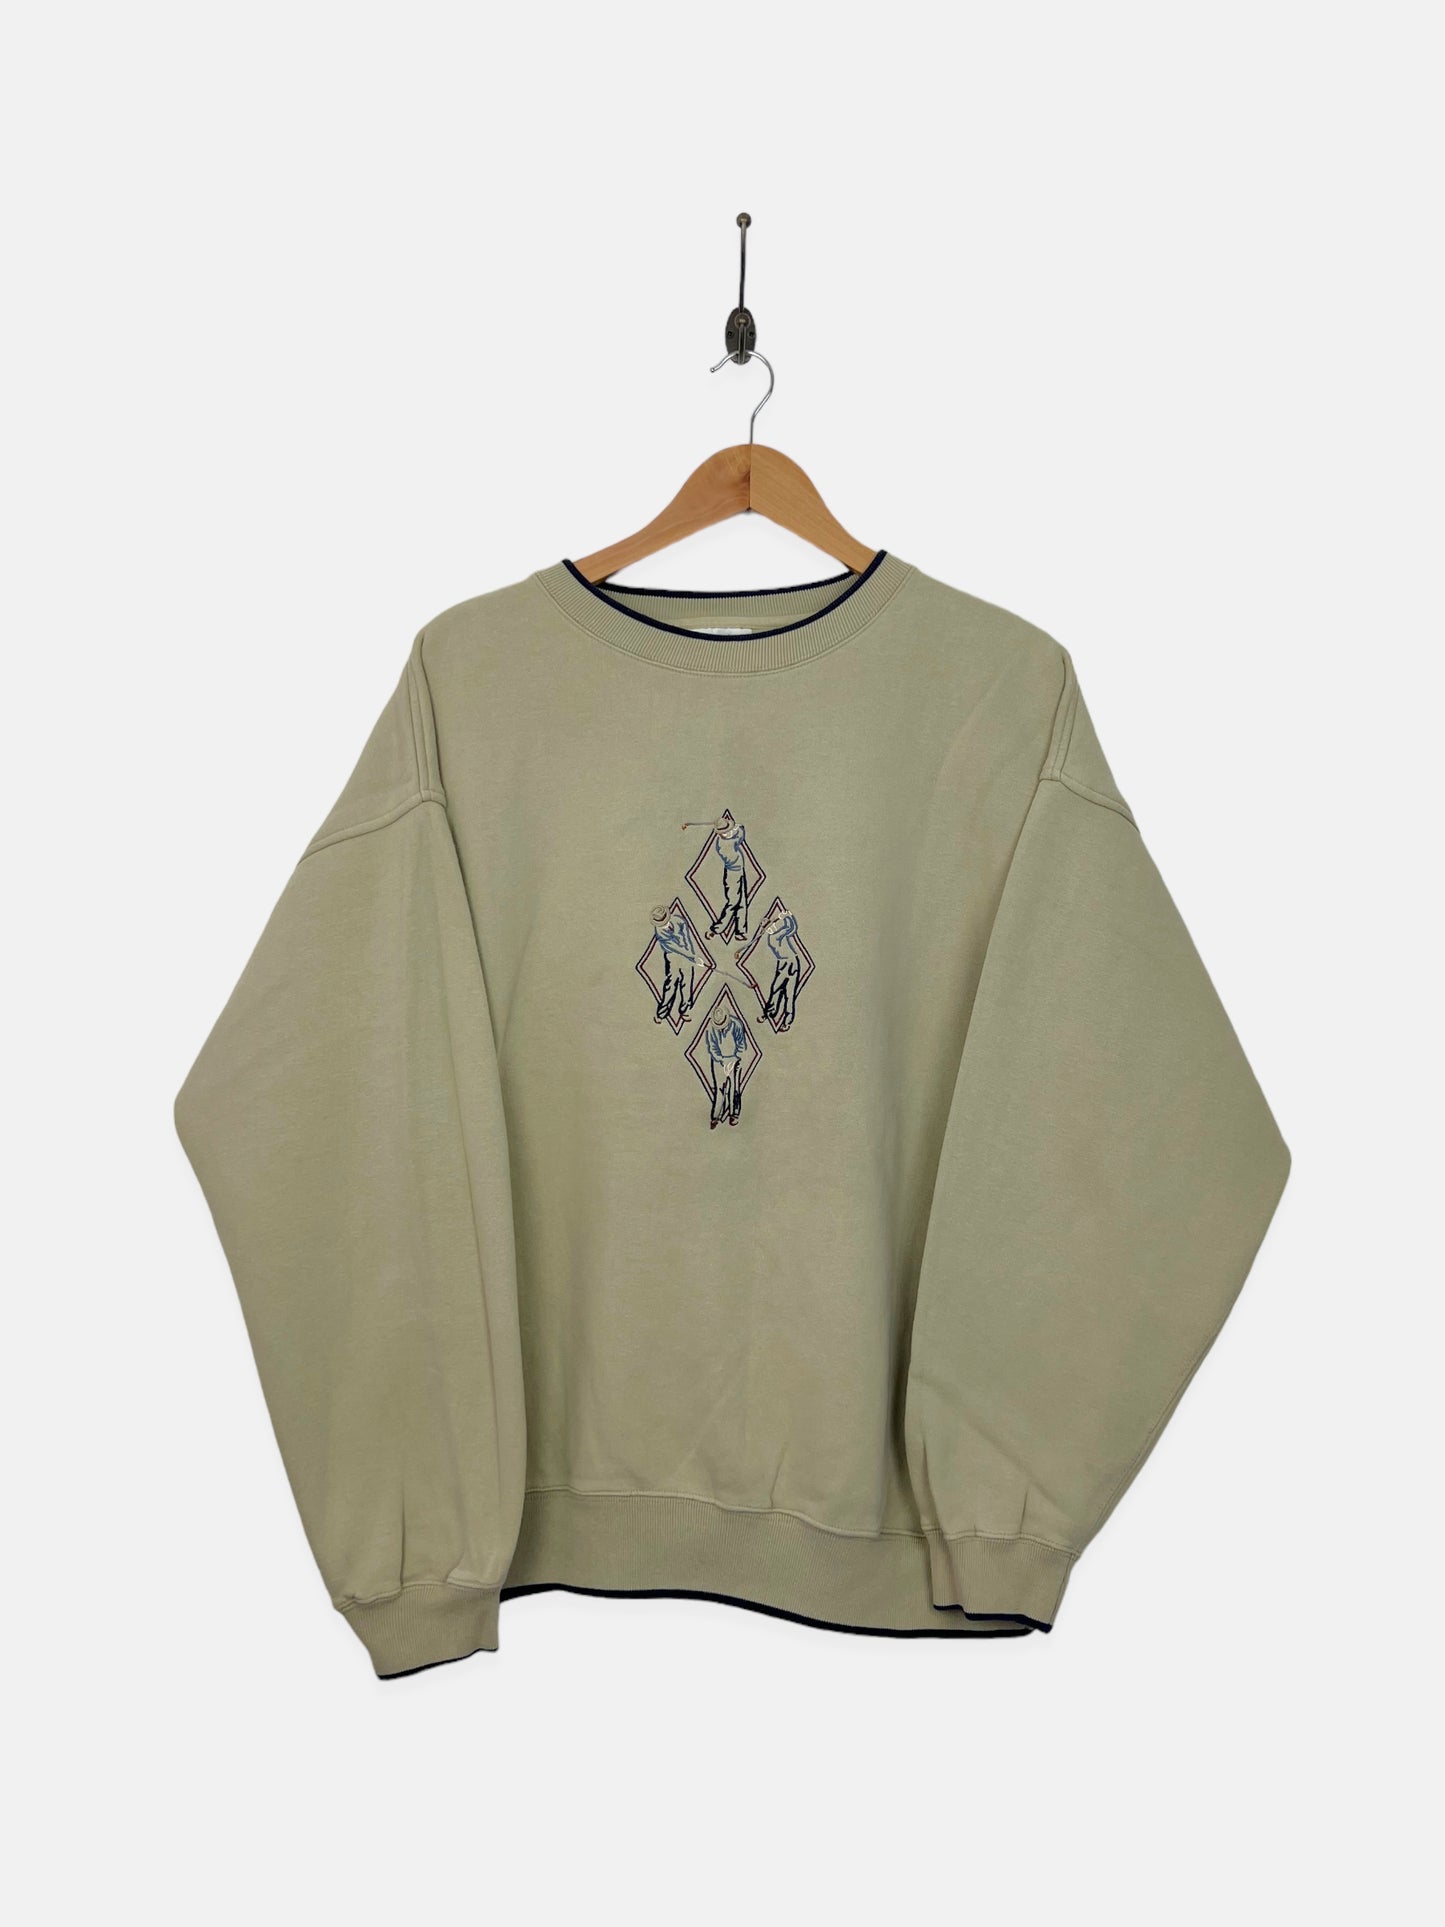 90's Golf Embroidered Vintage Sweatshirt Size XL